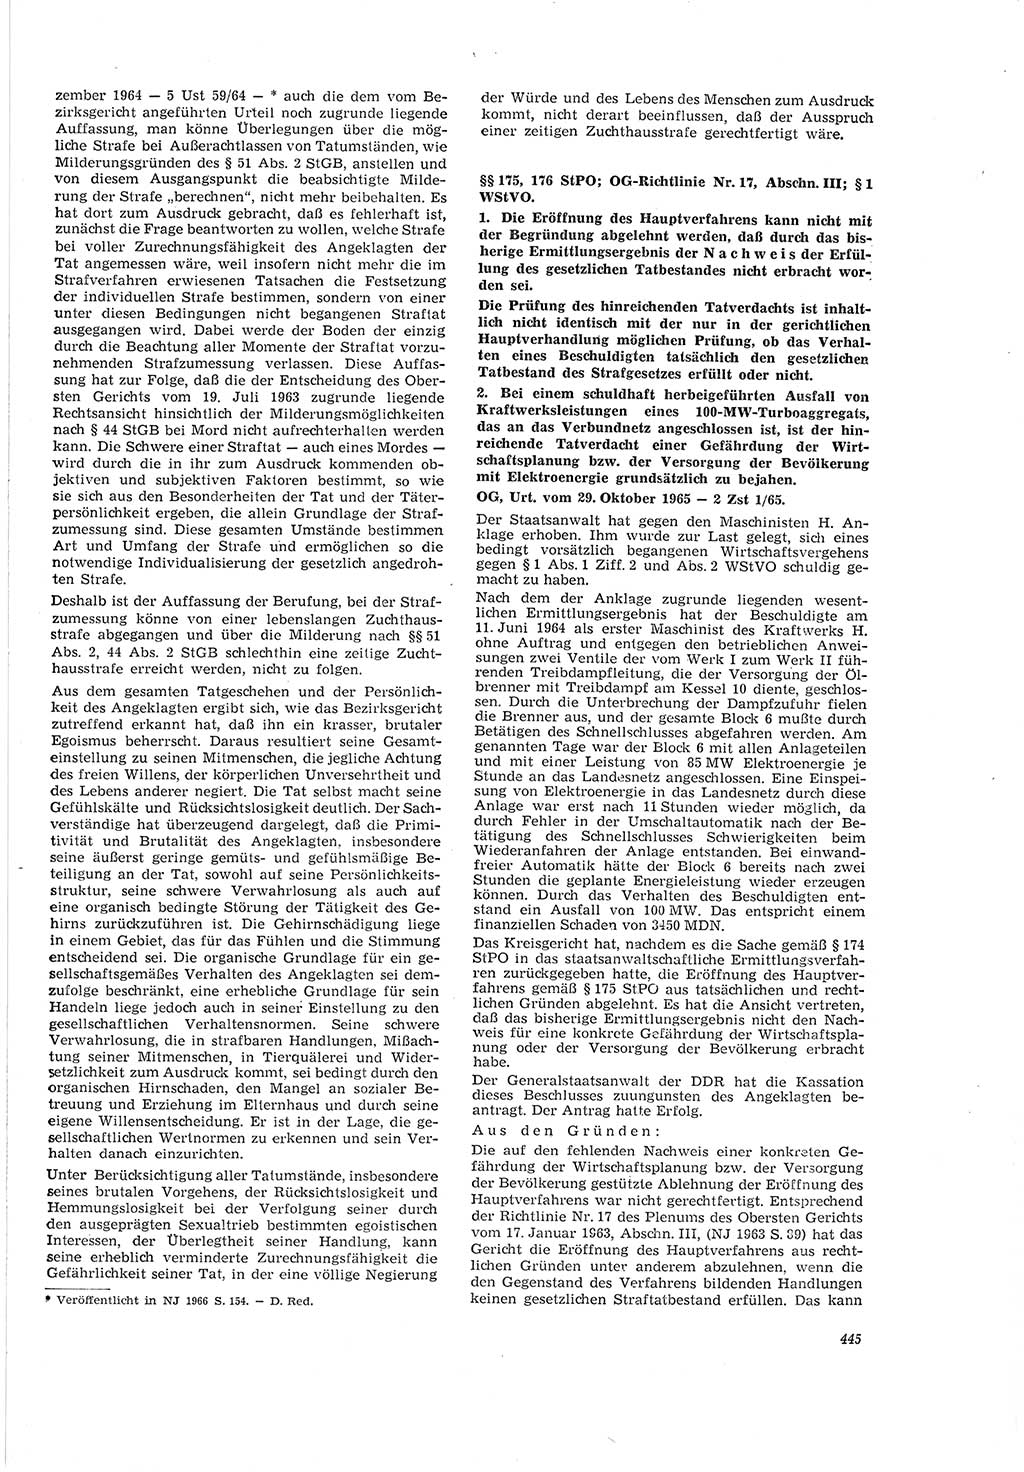 Neue Justiz (NJ), Zeitschrift für Recht und Rechtswissenschaft [Deutsche Demokratische Republik (DDR)], 20. Jahrgang 1966, Seite 445 (NJ DDR 1966, S. 445)